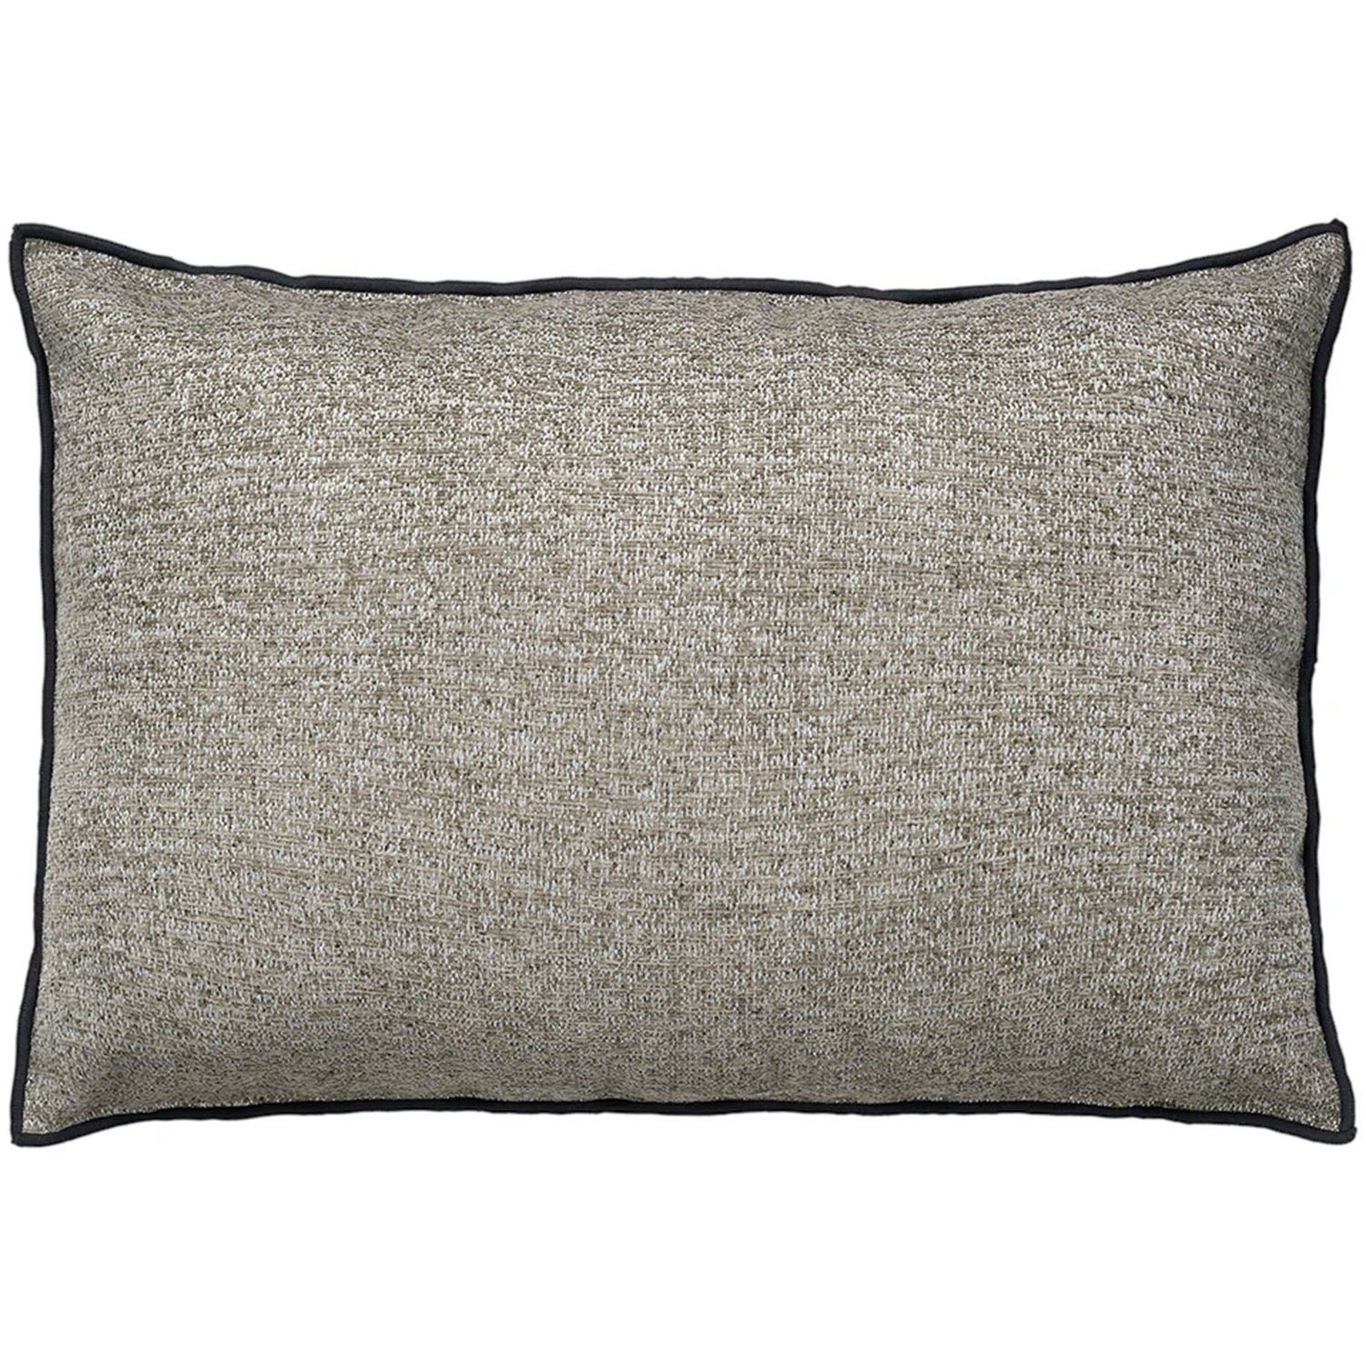 CHENILLE Cushion Cover 40x60cm, Espresso